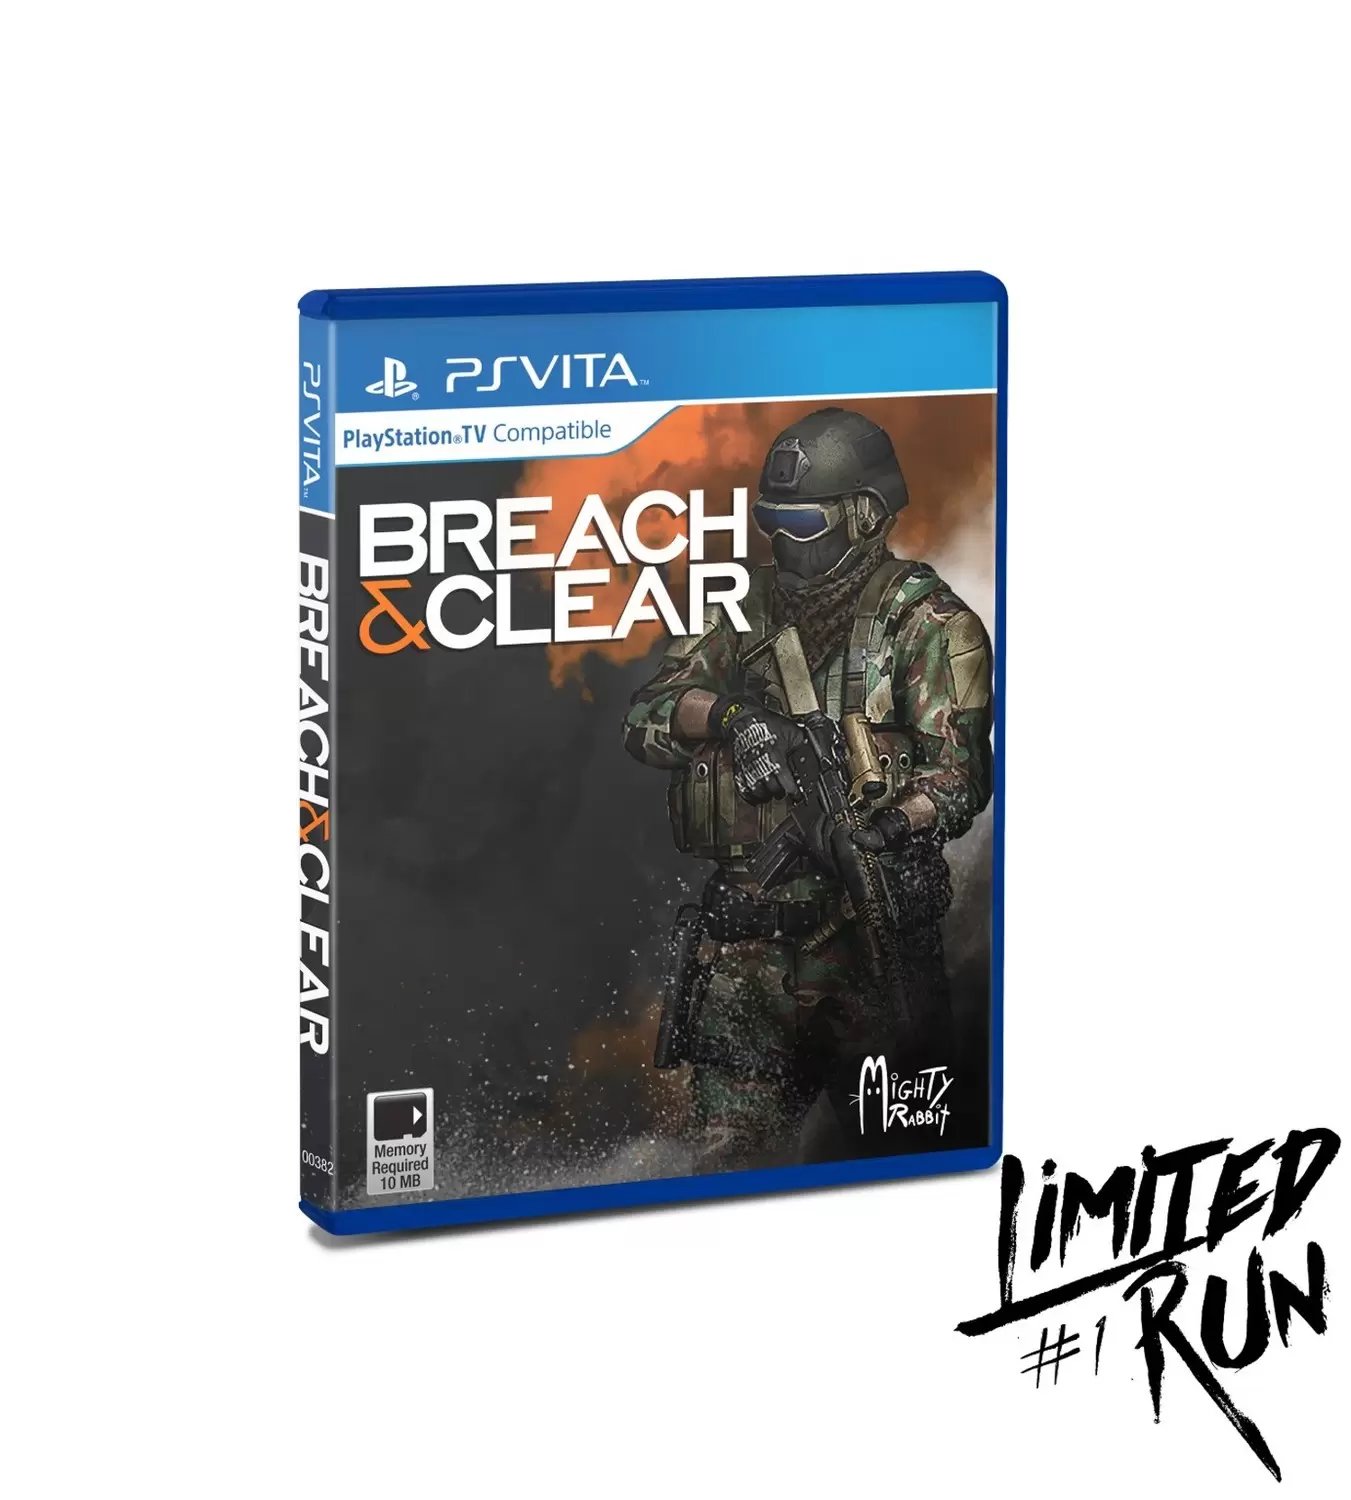 PS Vita Games - Breach & Clear